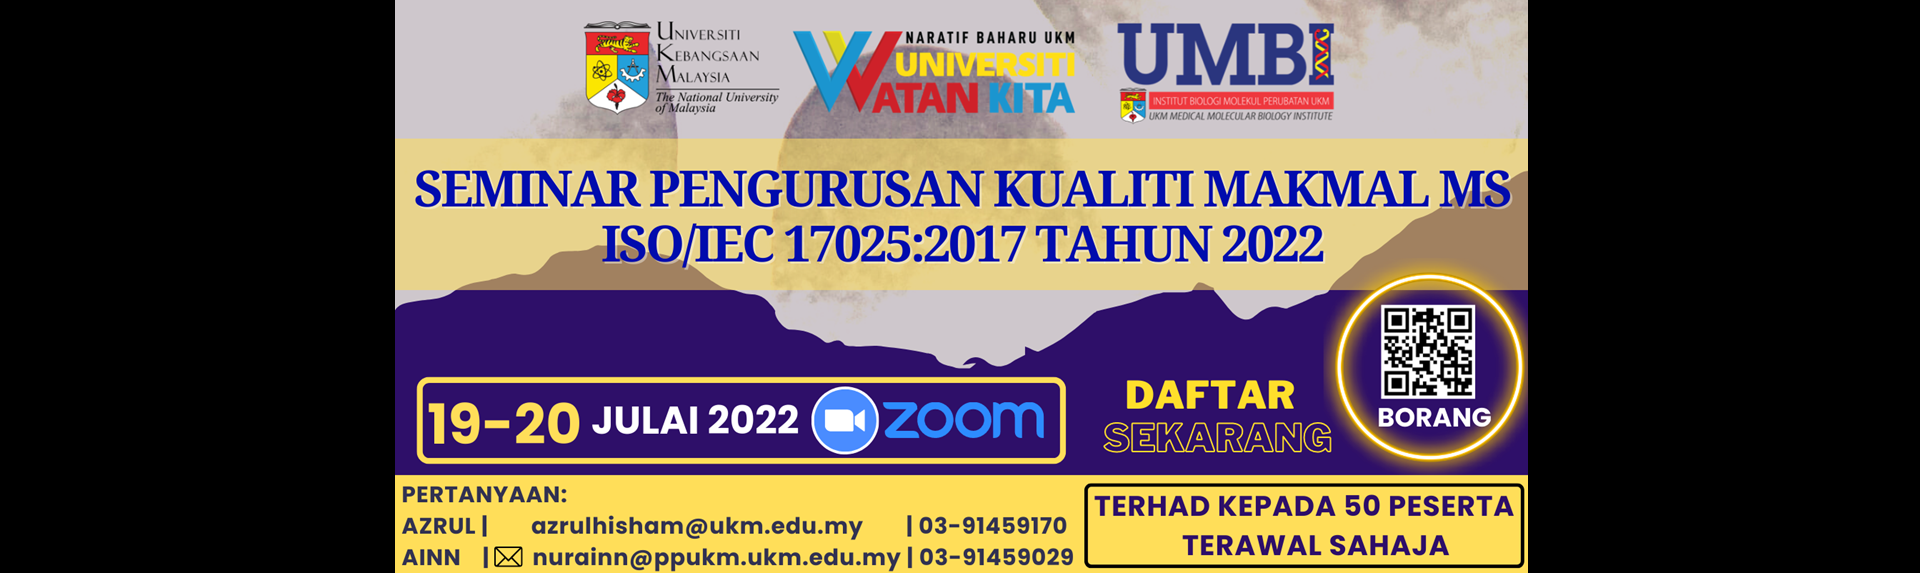 Seminar Pengurusan Kualiti Makmal MS ISO 17025:2017 Tahun 2022